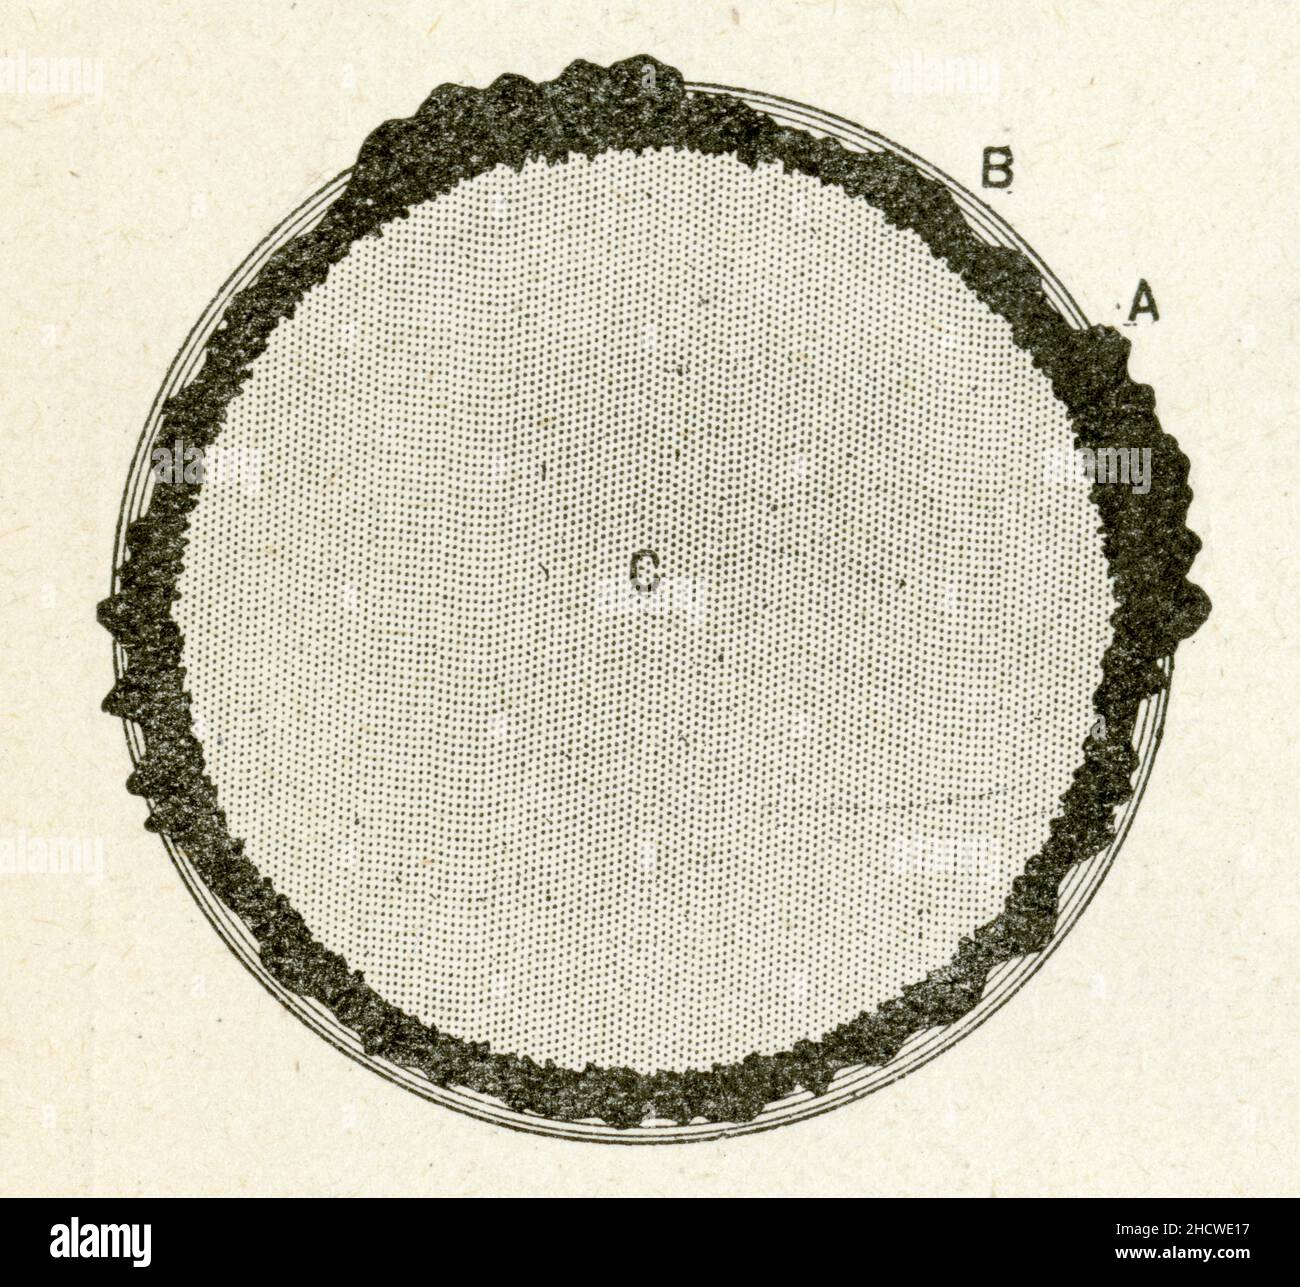 A, croute terrestre; B,Océan; C,Intérieur de la Terre en fusion. Stock Photo